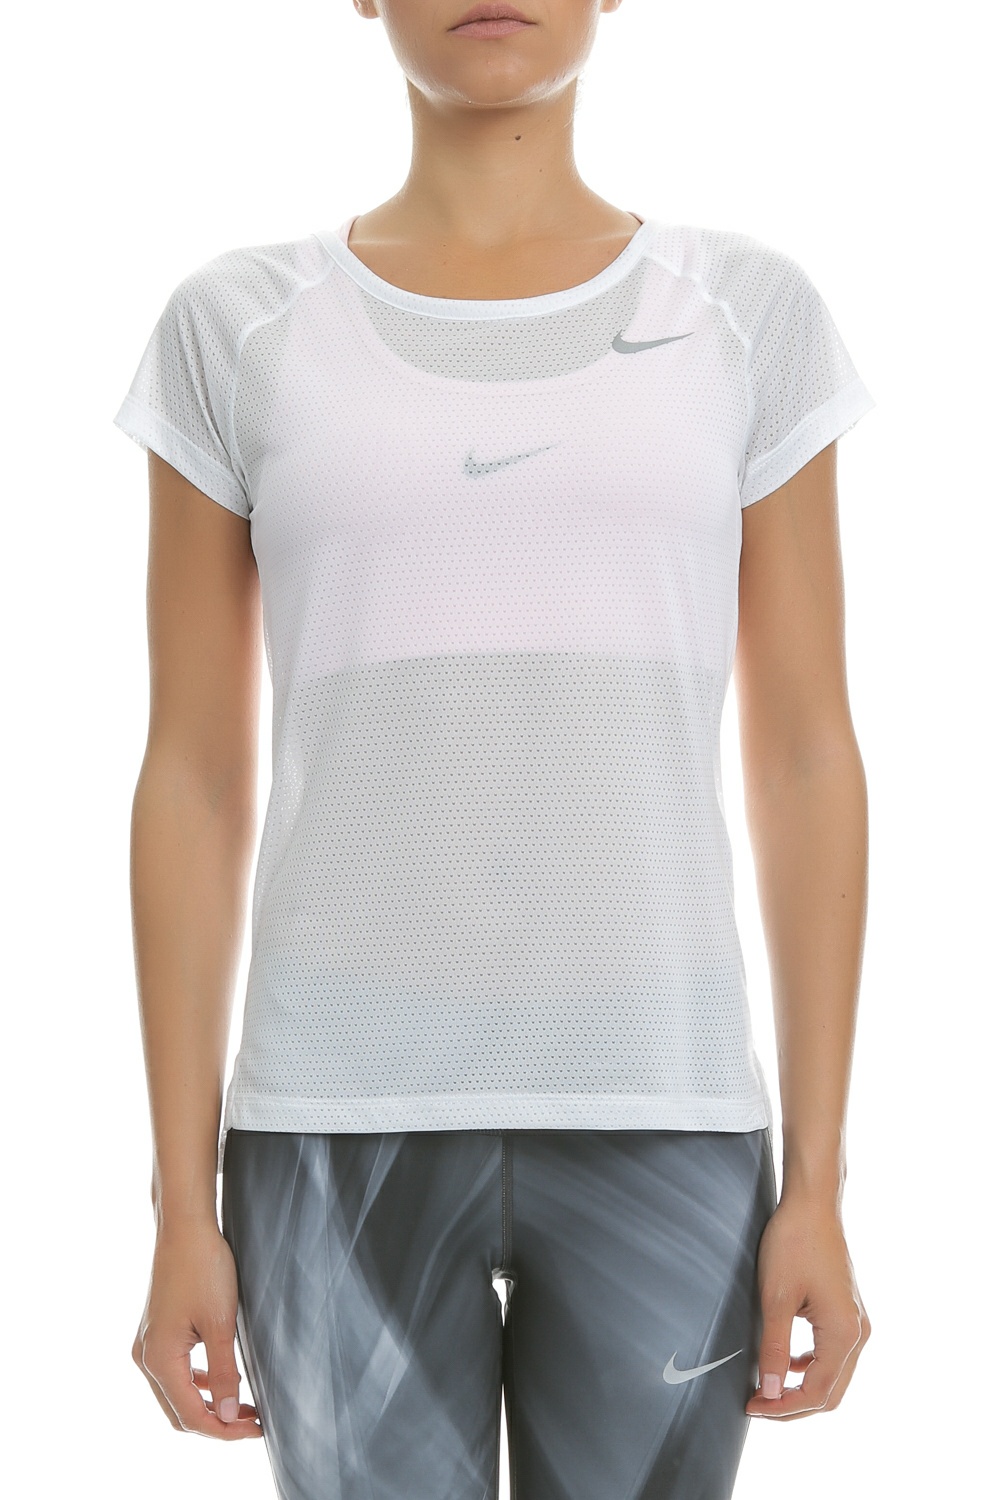 Γυναικεία/Ρούχα/Αθλητικά/T-shirt-Τοπ NIKE - Γυναικεία κοντομάνικη μπλούζα Nike λευκή